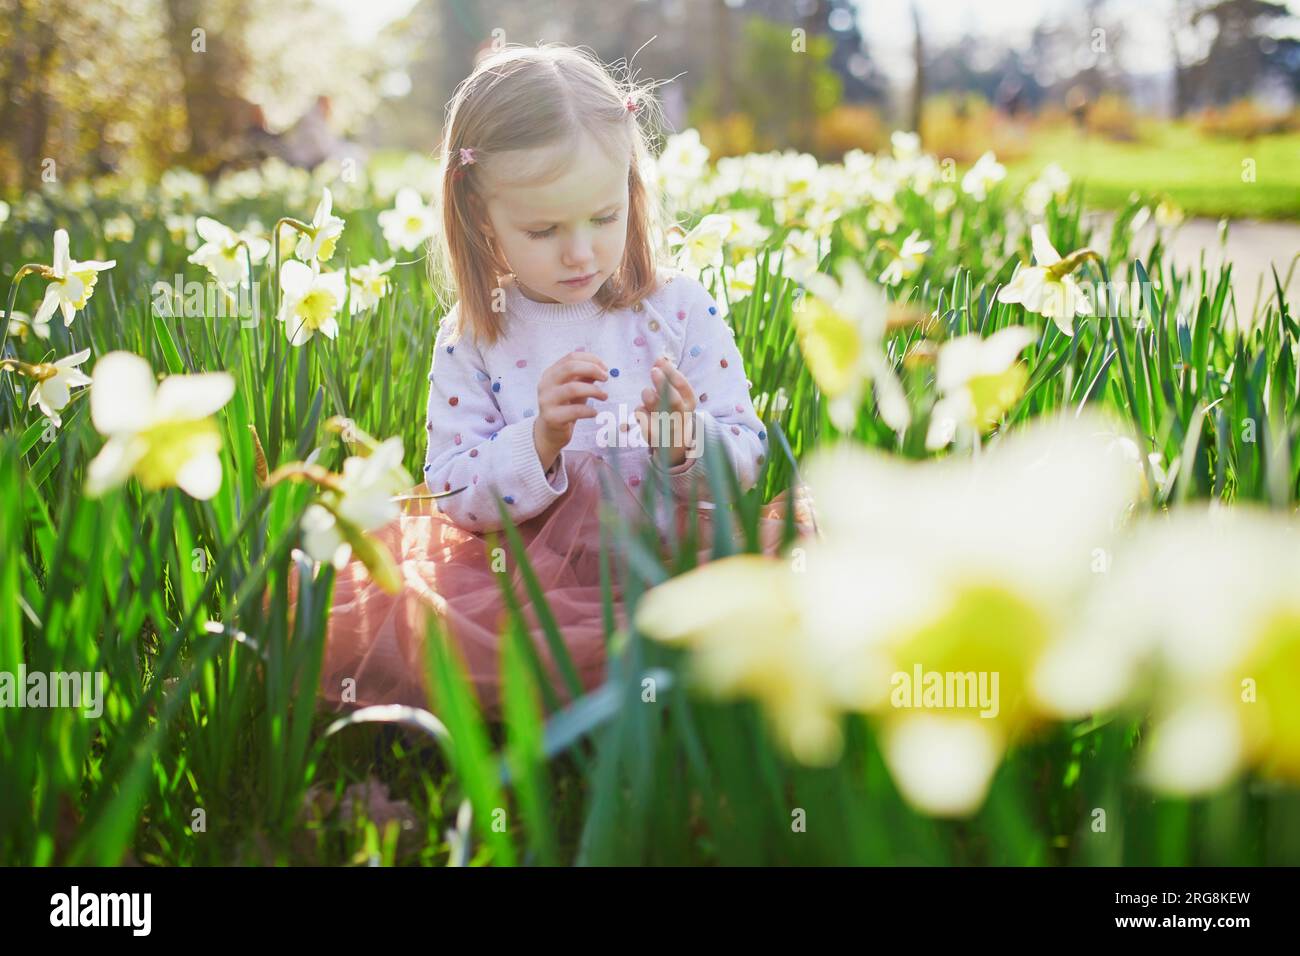 Bambina prescolare seduta sull'erba con narcissi gialli. Bambino che guarda i fiori in una giornata primaverile nel parco. Adorabile bambino che esplora la natura Foto Stock